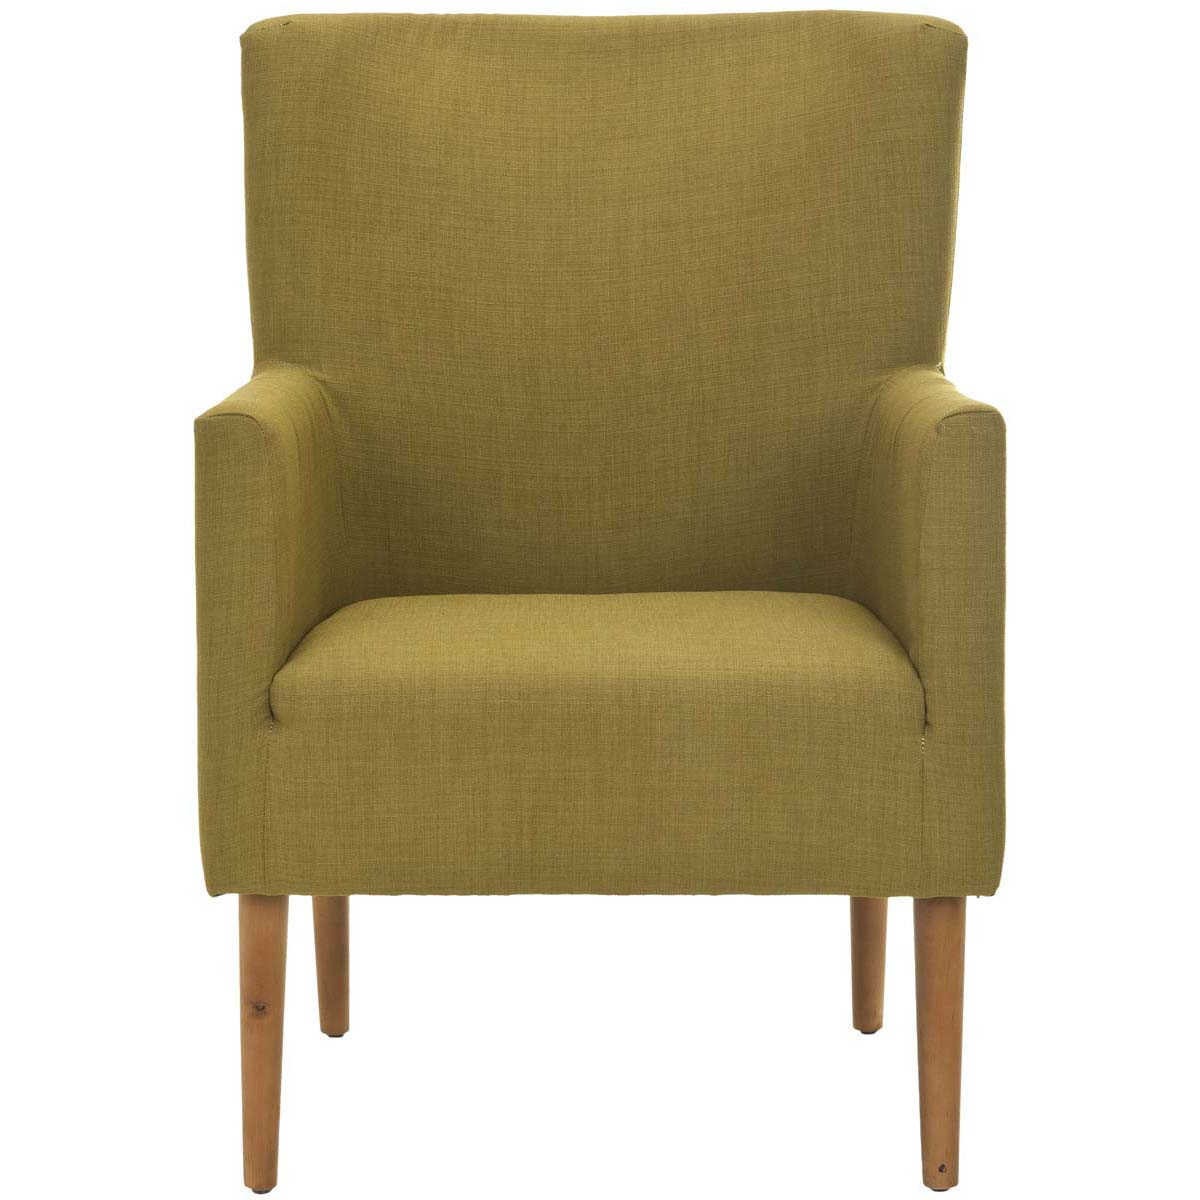 Safavieh Everett Arm Chair , MCR4607